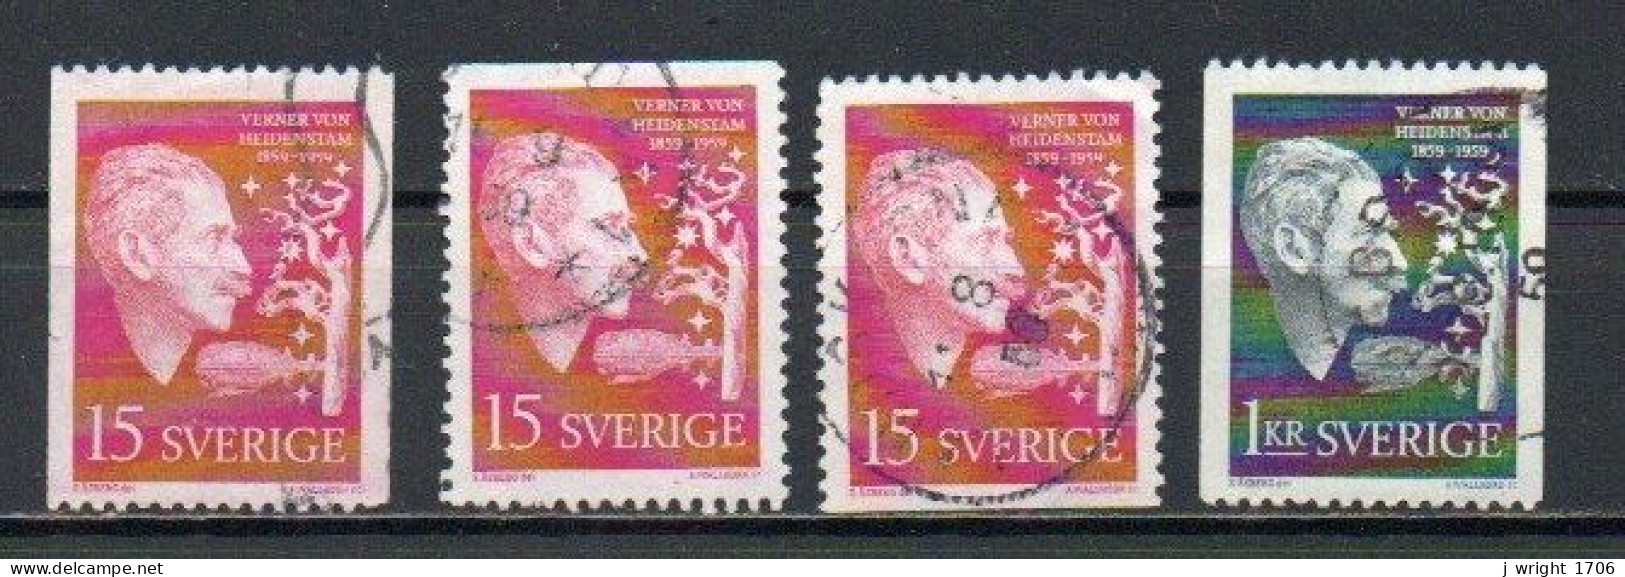 Sweden, 1959, Verner Von Heidenstam, Set, USED - Usati